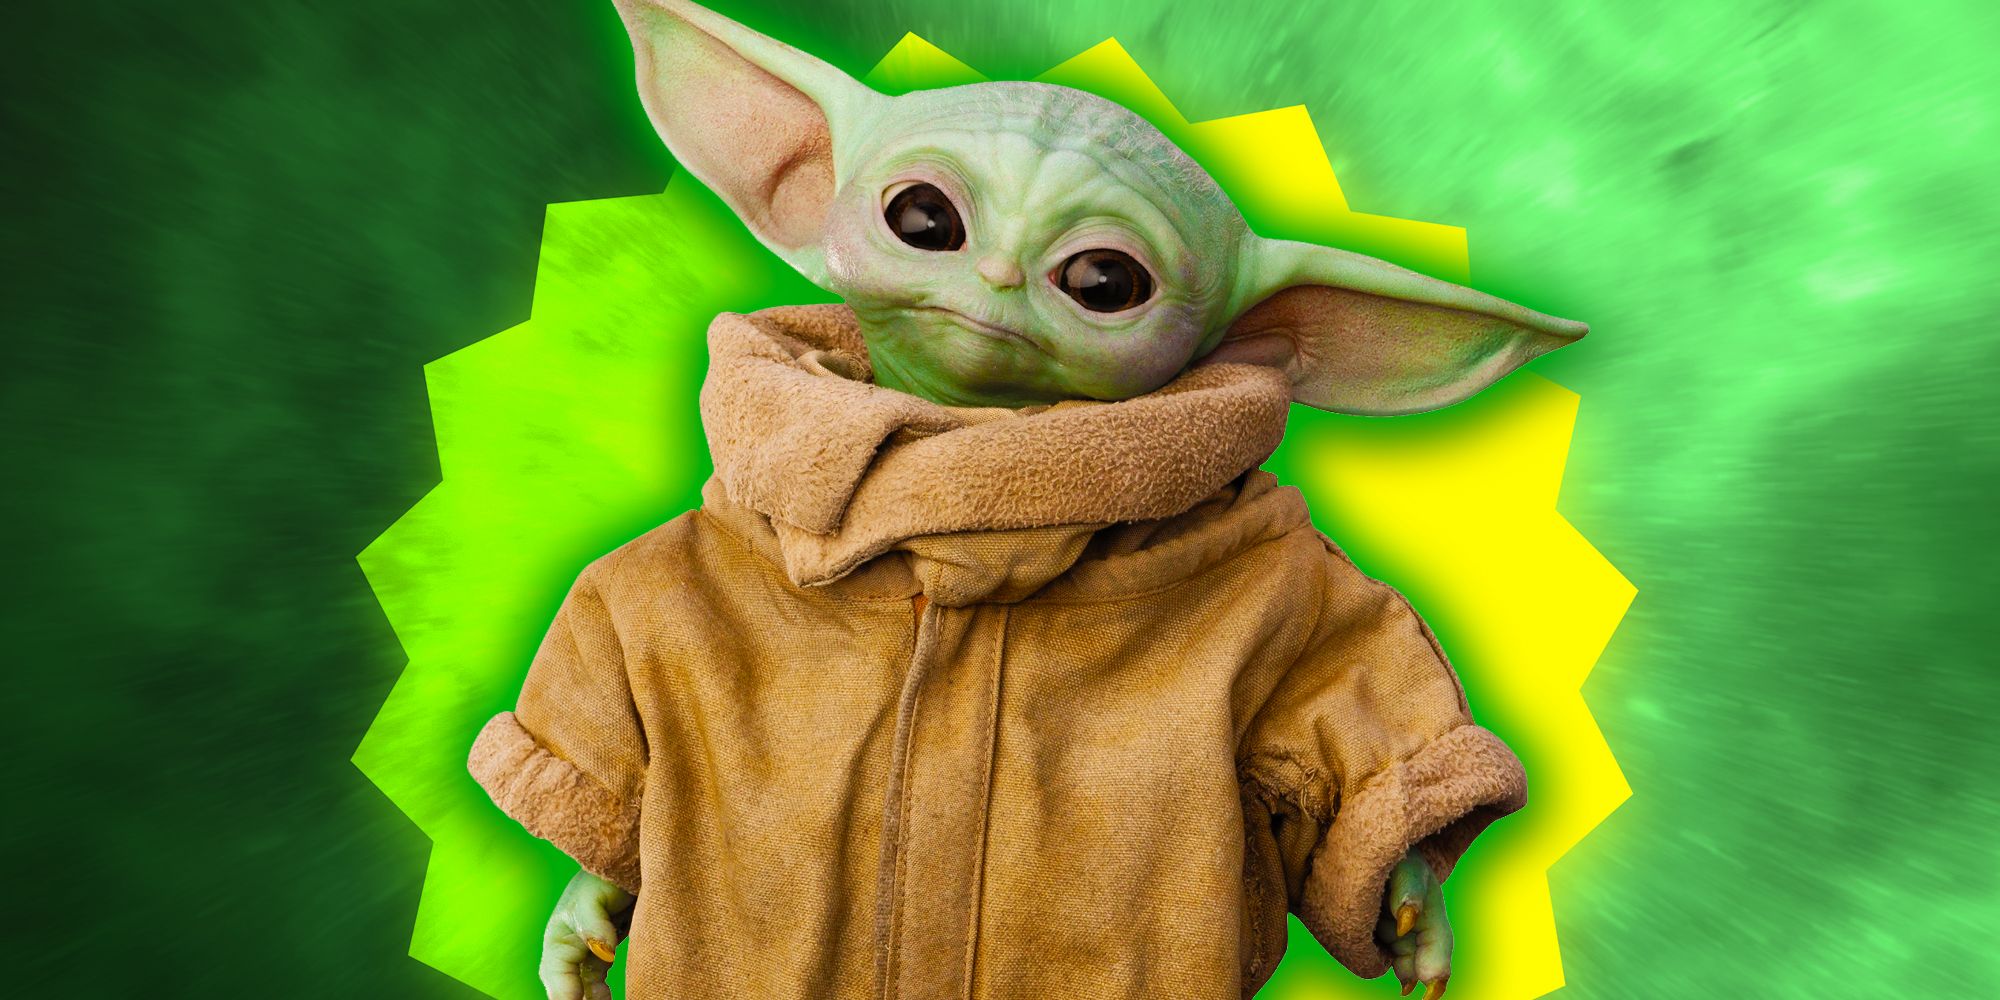 Star Wars presentó en secreto a Baby Yoda hace 22 años… y nadie se dio cuenta